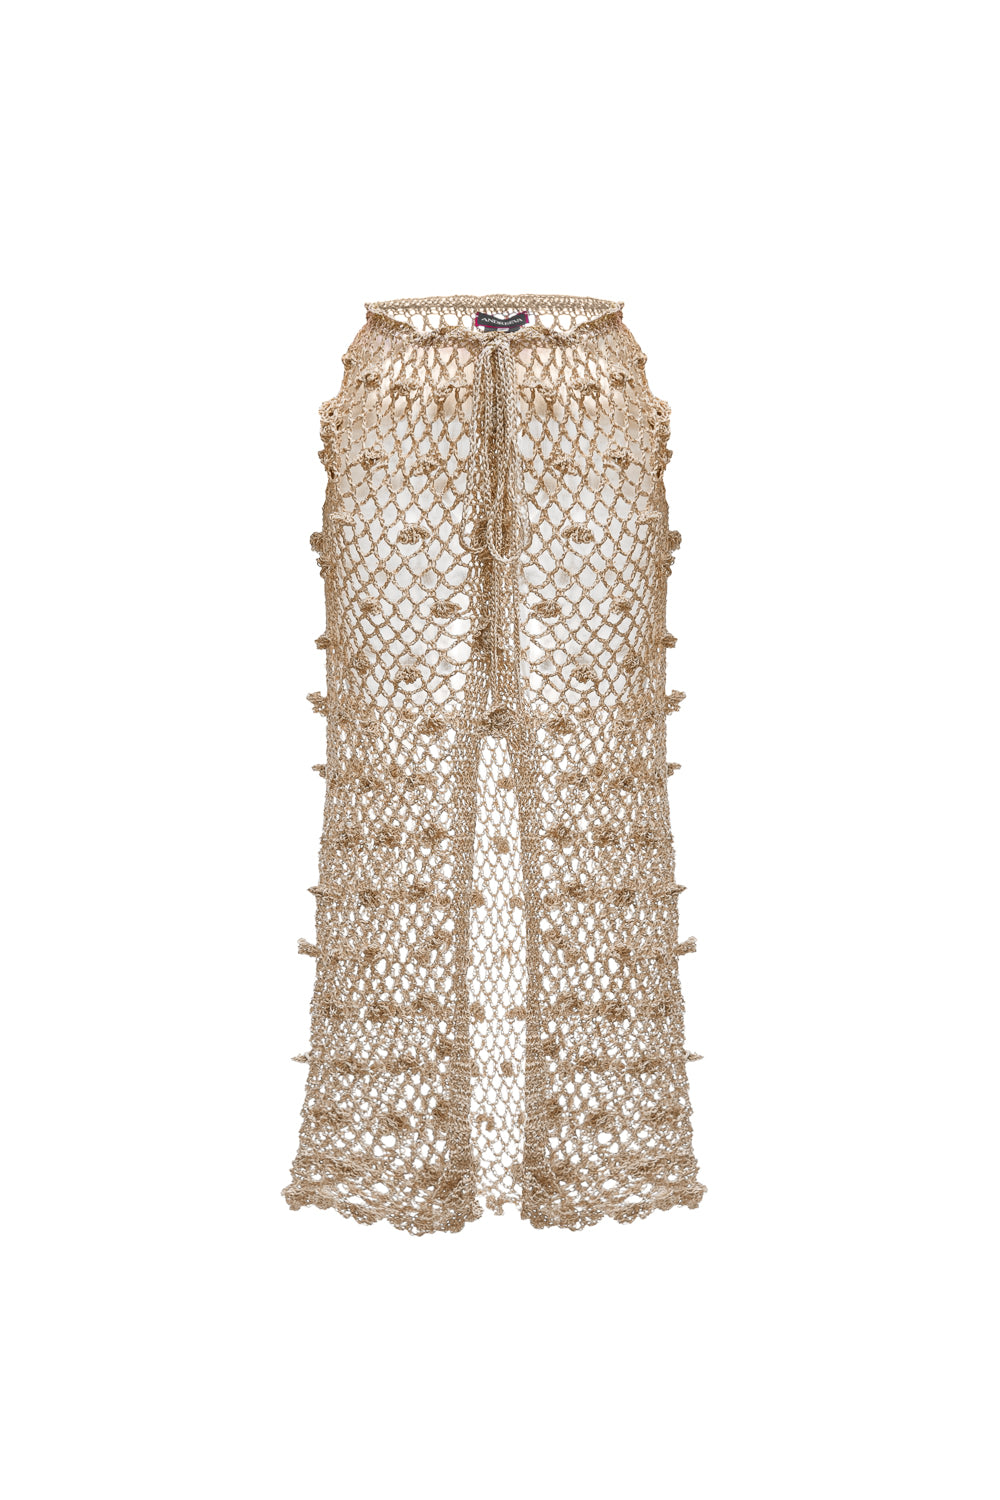 Women’s Gold / Silver Metallic Handmade Crochet Skirt Large Andreeva